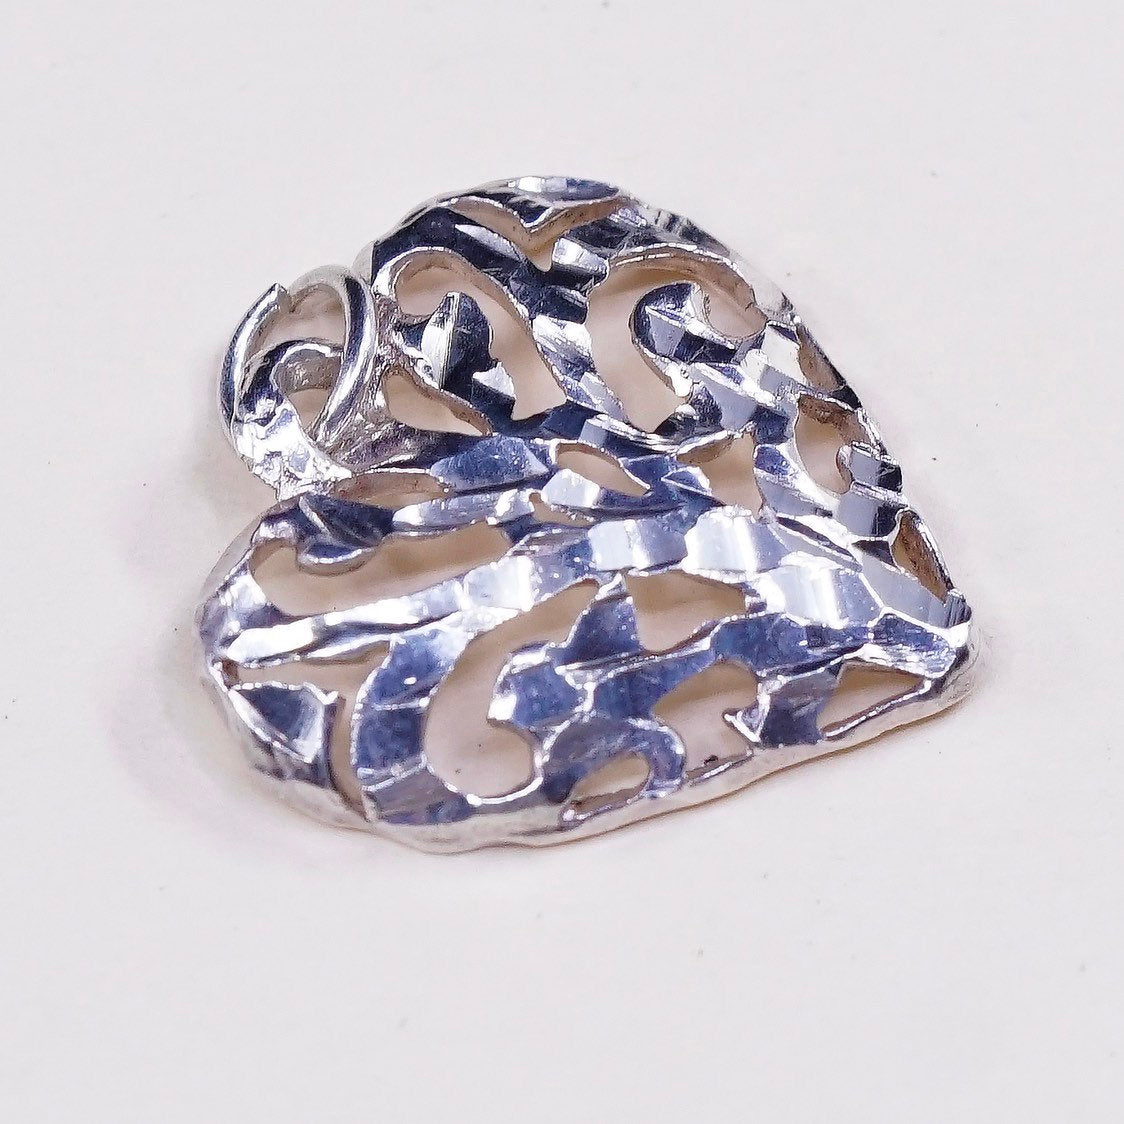 VTG sterling silver handmade pendant, 925 silver filigree heart charm